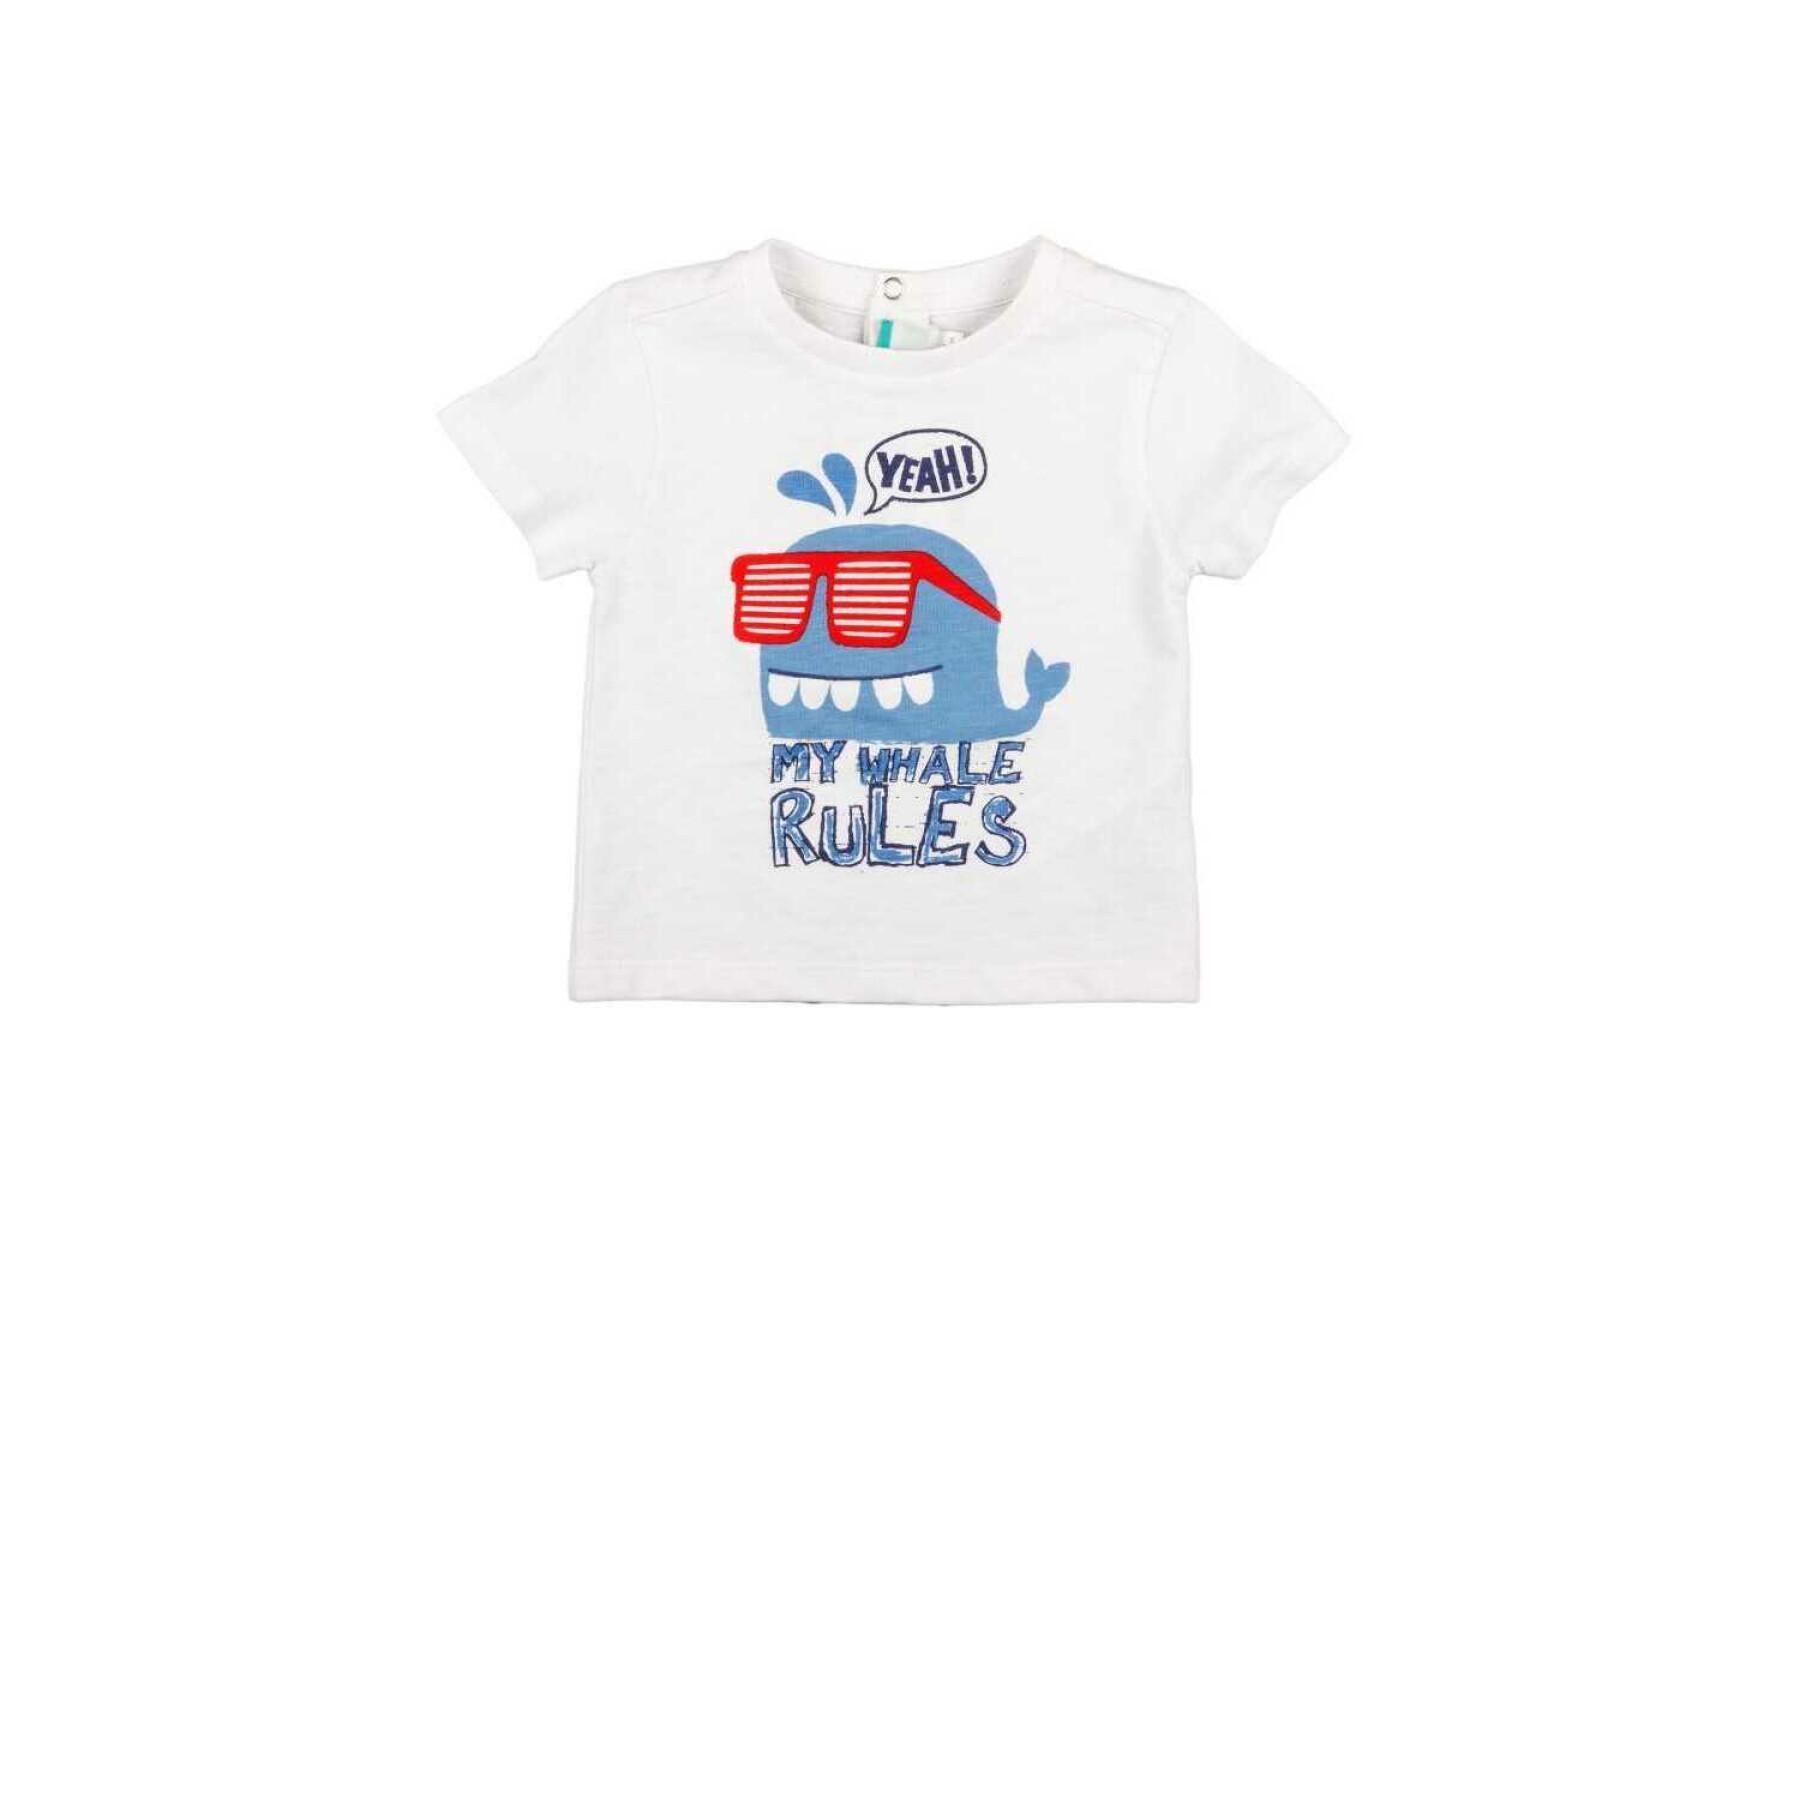 Charanga Cangreji T-Shirt para Bebés 